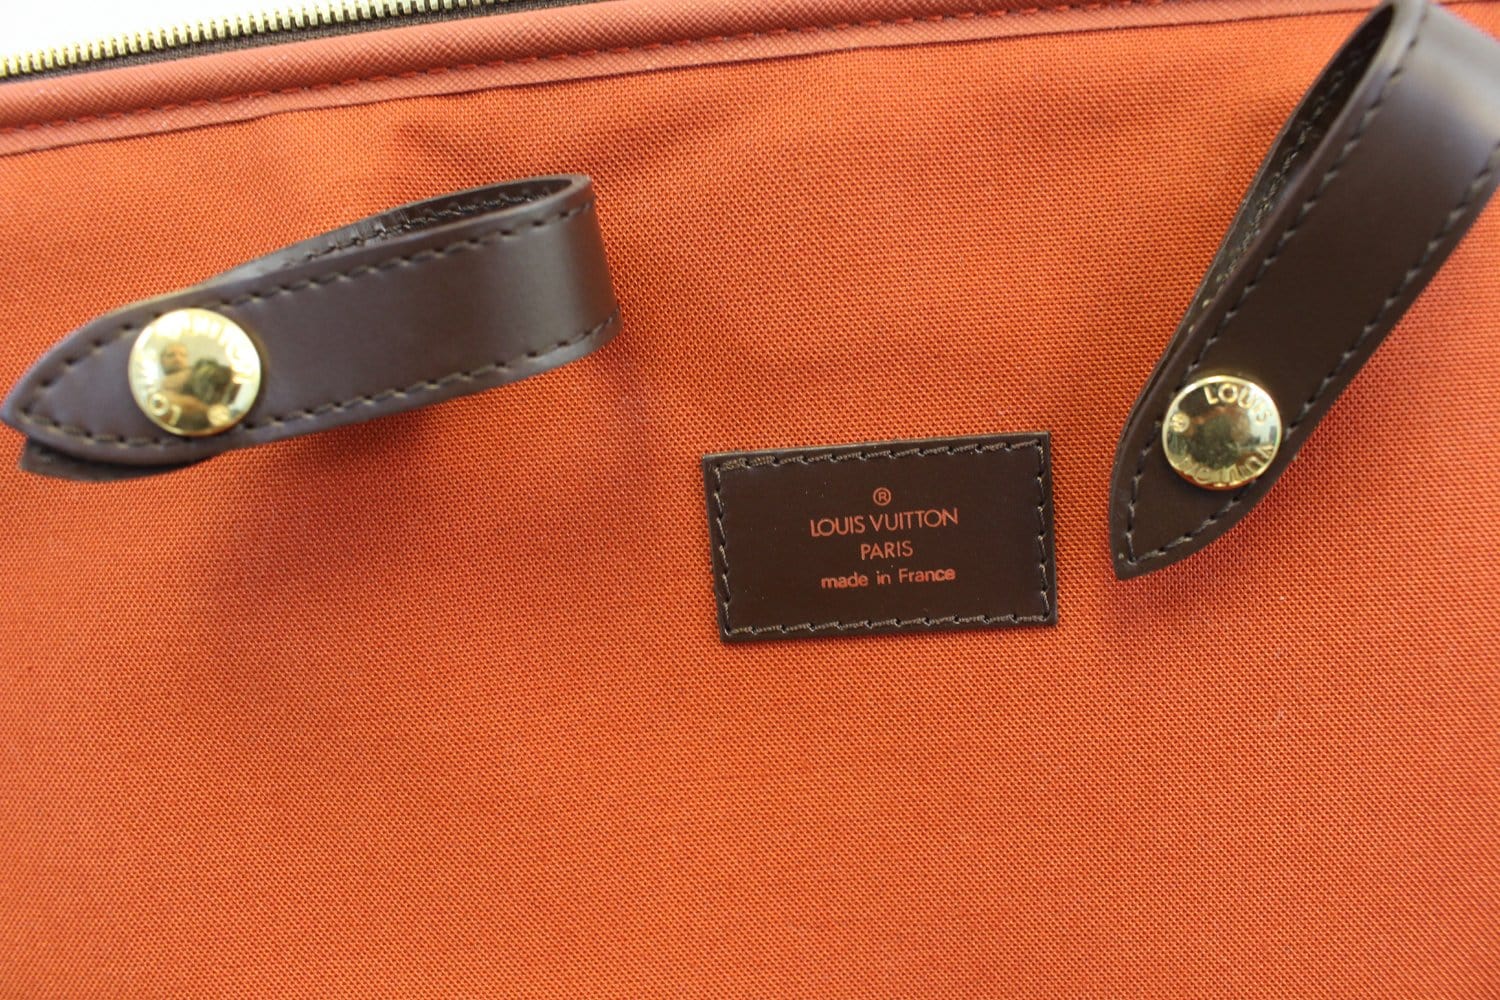 Louis Vuitton - Damier Ebene Pegase 55 Trolley suitcase - Catawiki